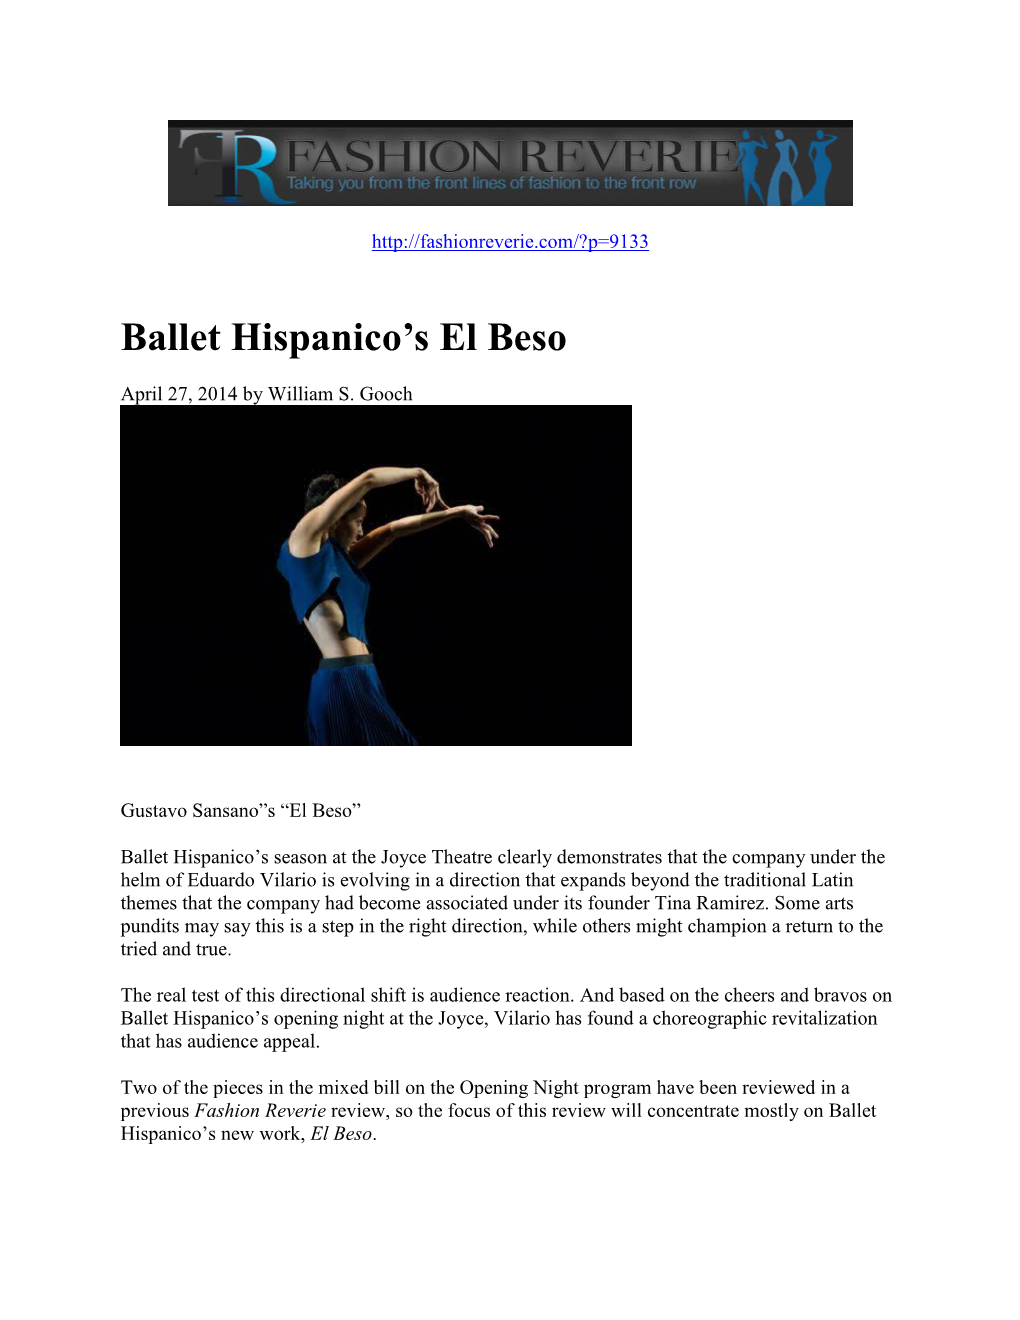 Ballet Hispanico's El Beso